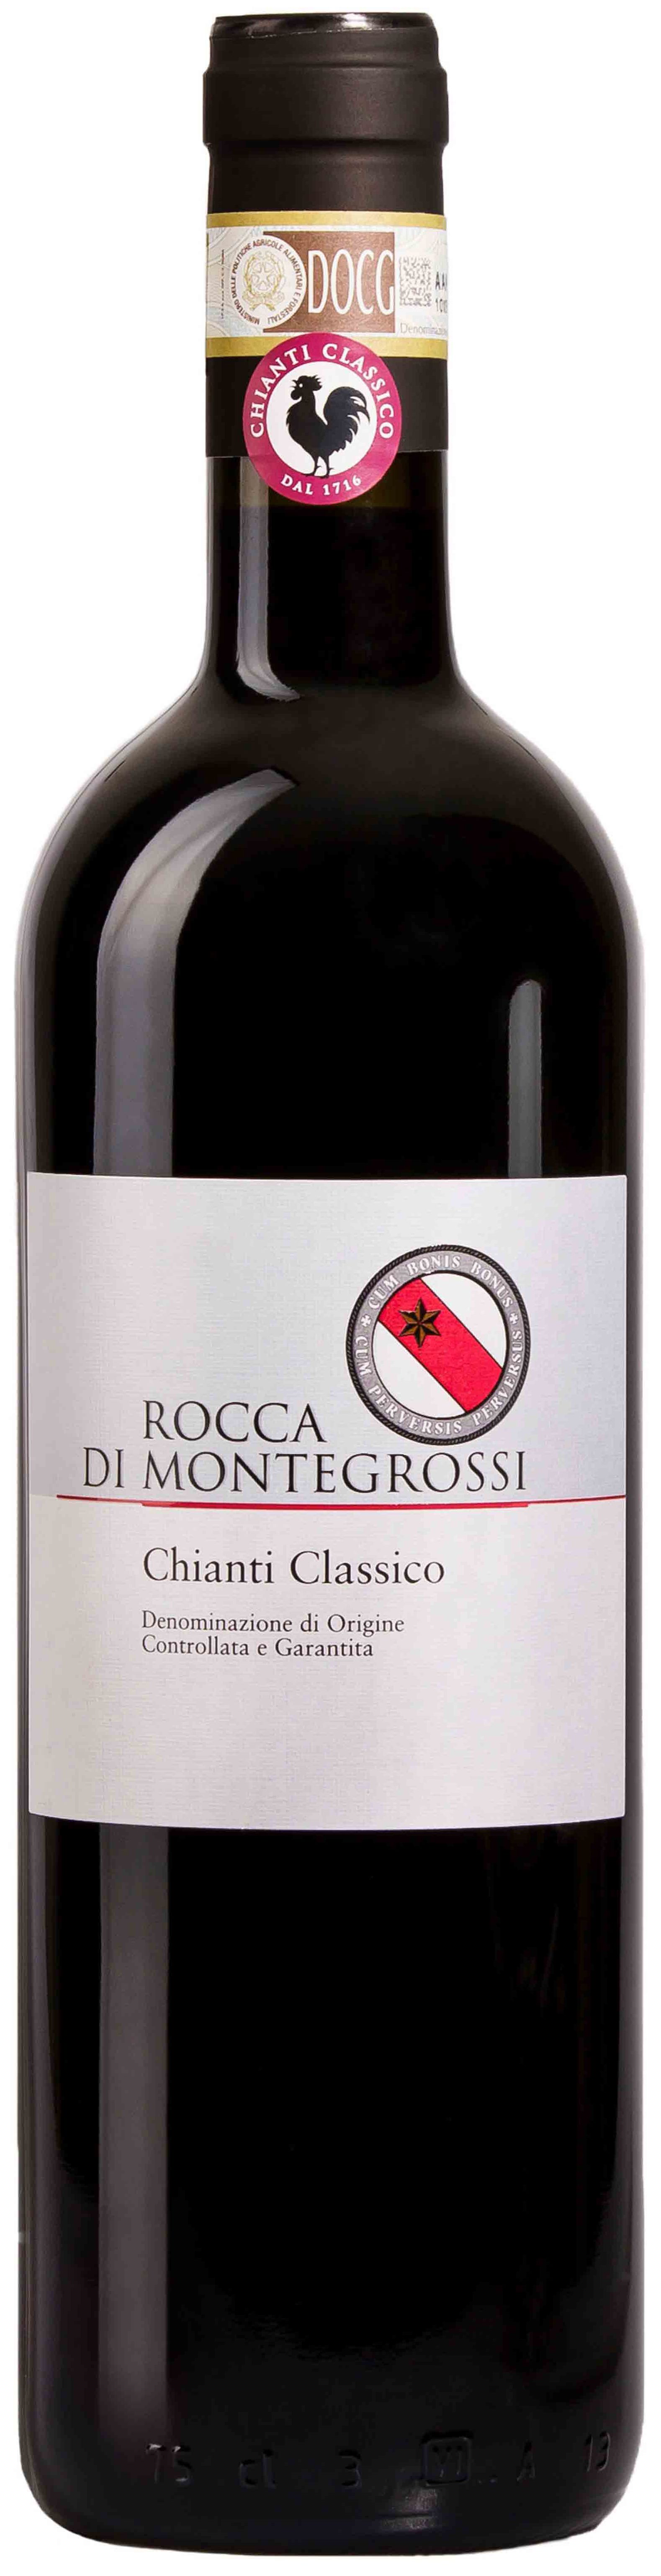 Rocca Di Montegrossi, Chianti Classico, 2017